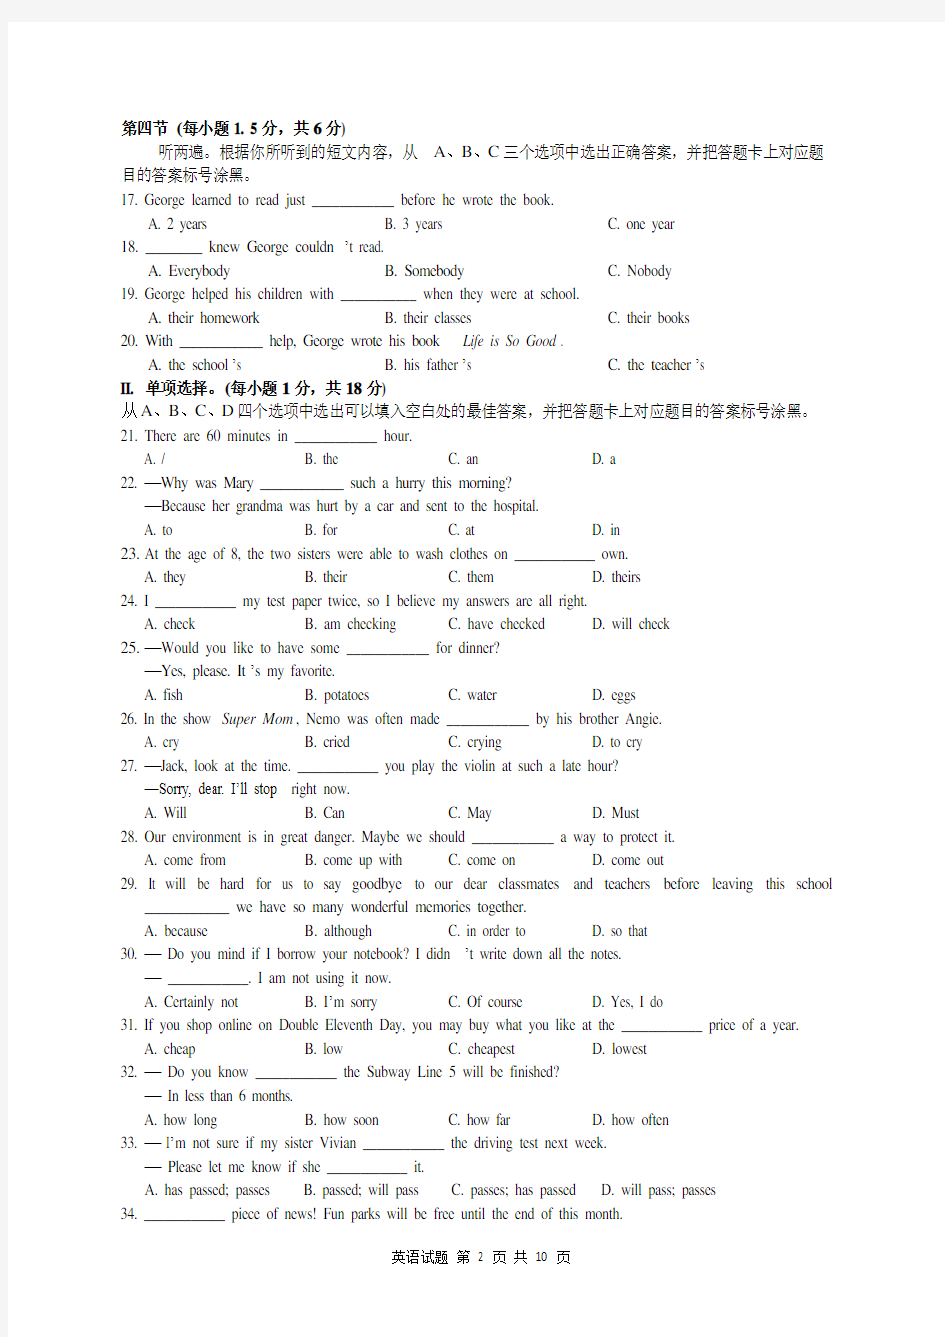 重庆一中初2017级16—17学年度下期第一次定时作业英语试题及答案(九年级一模)